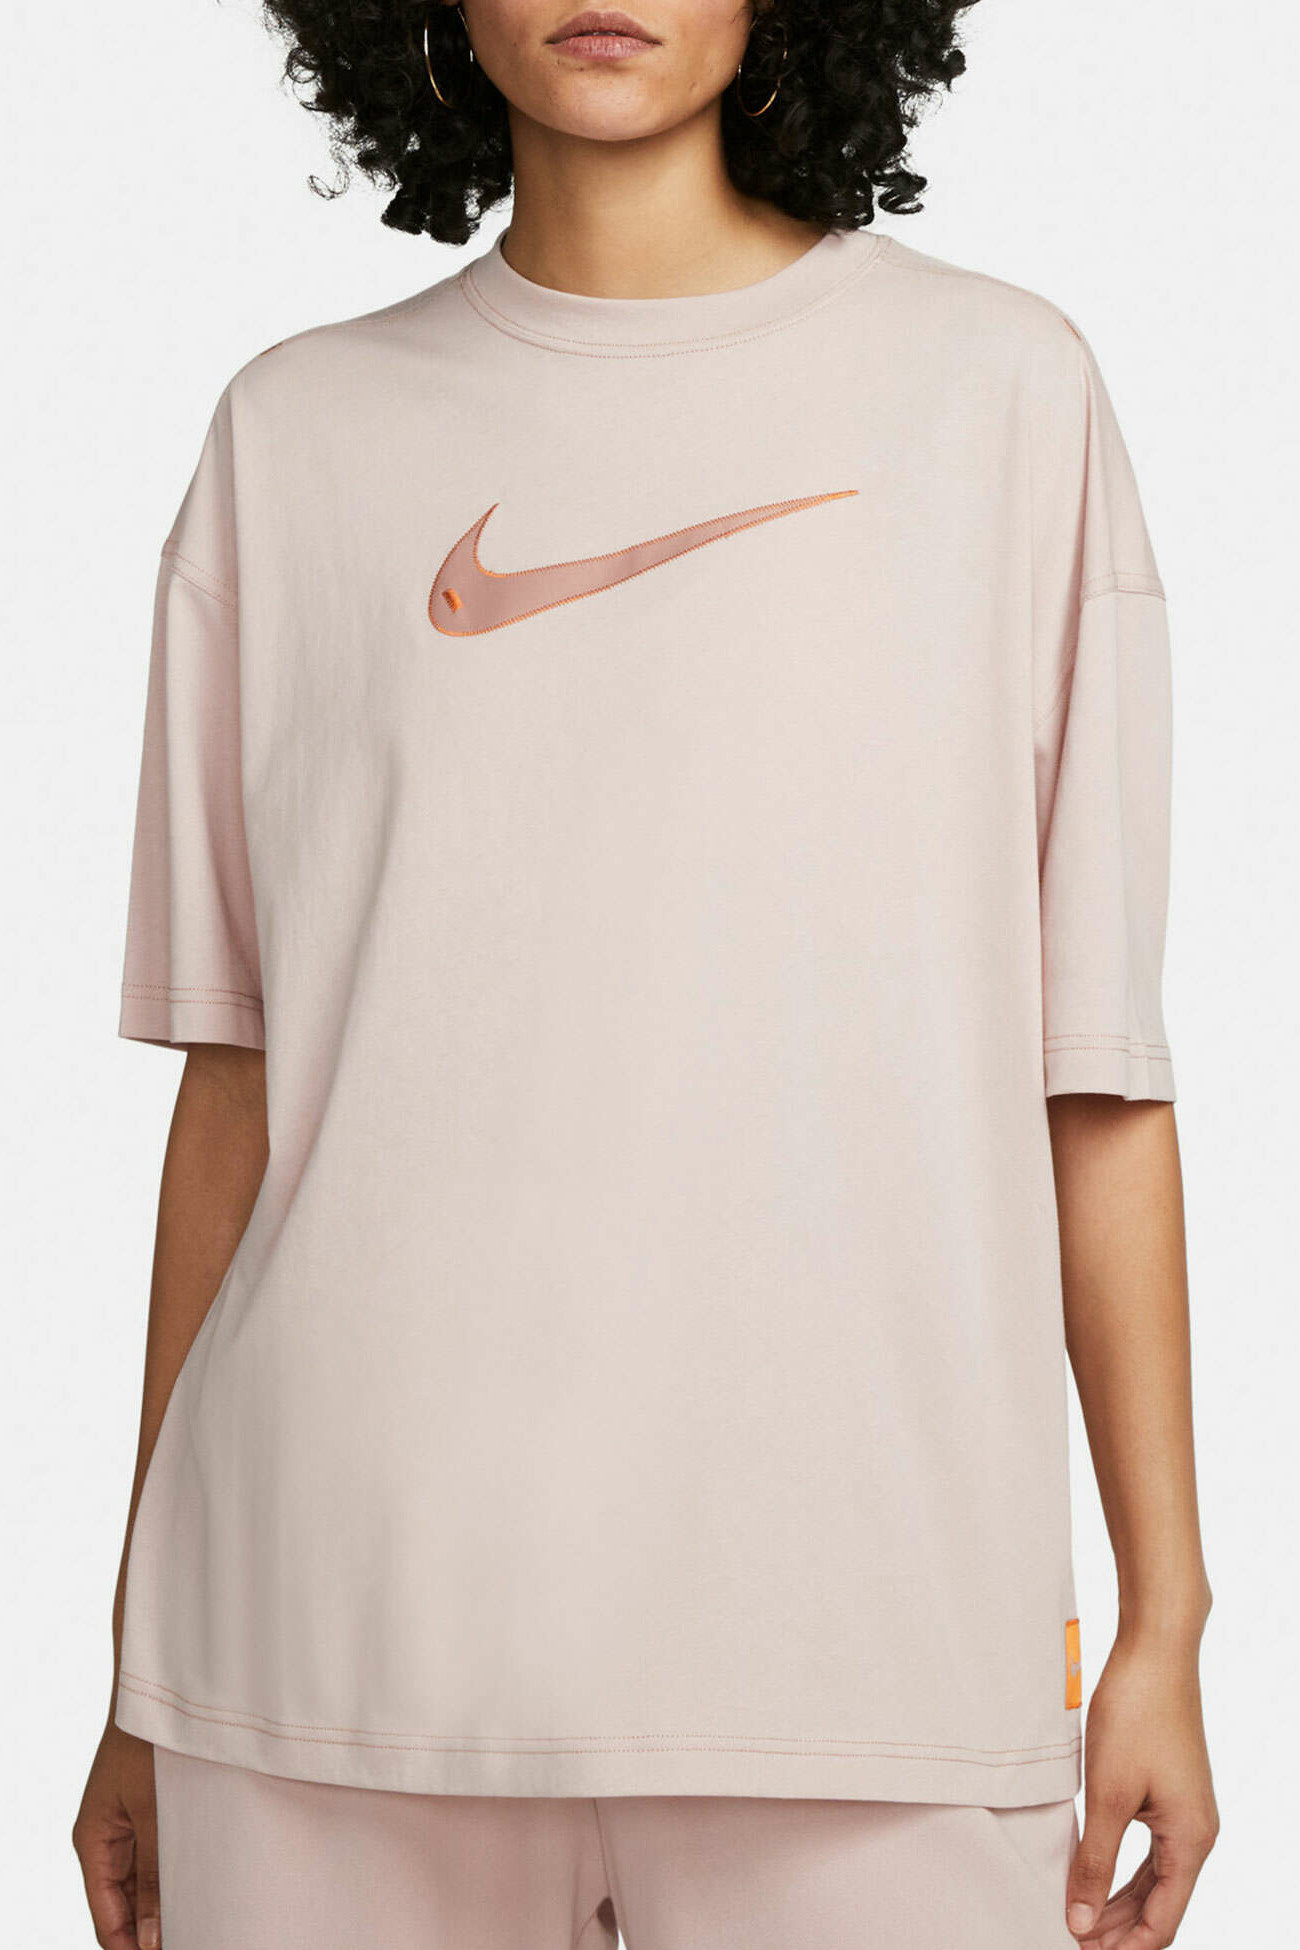 Футболка жіноча Nike W Nsw Swsh Ss Top рожева DM6211-601 